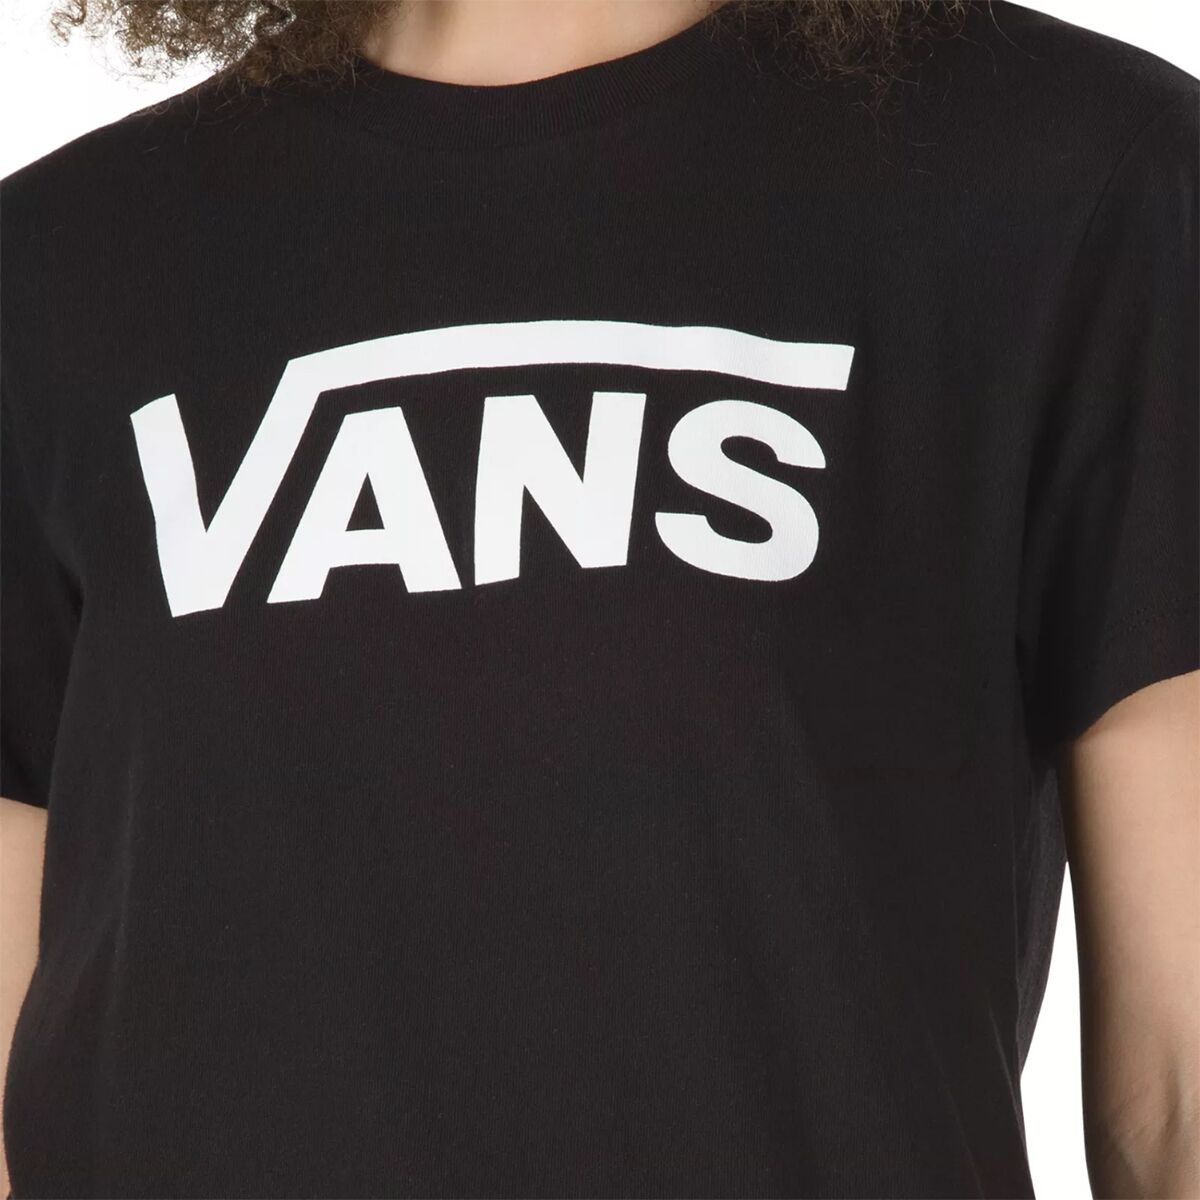 Vans Flying V Crew T-Shirt Clothing - Women\'s 